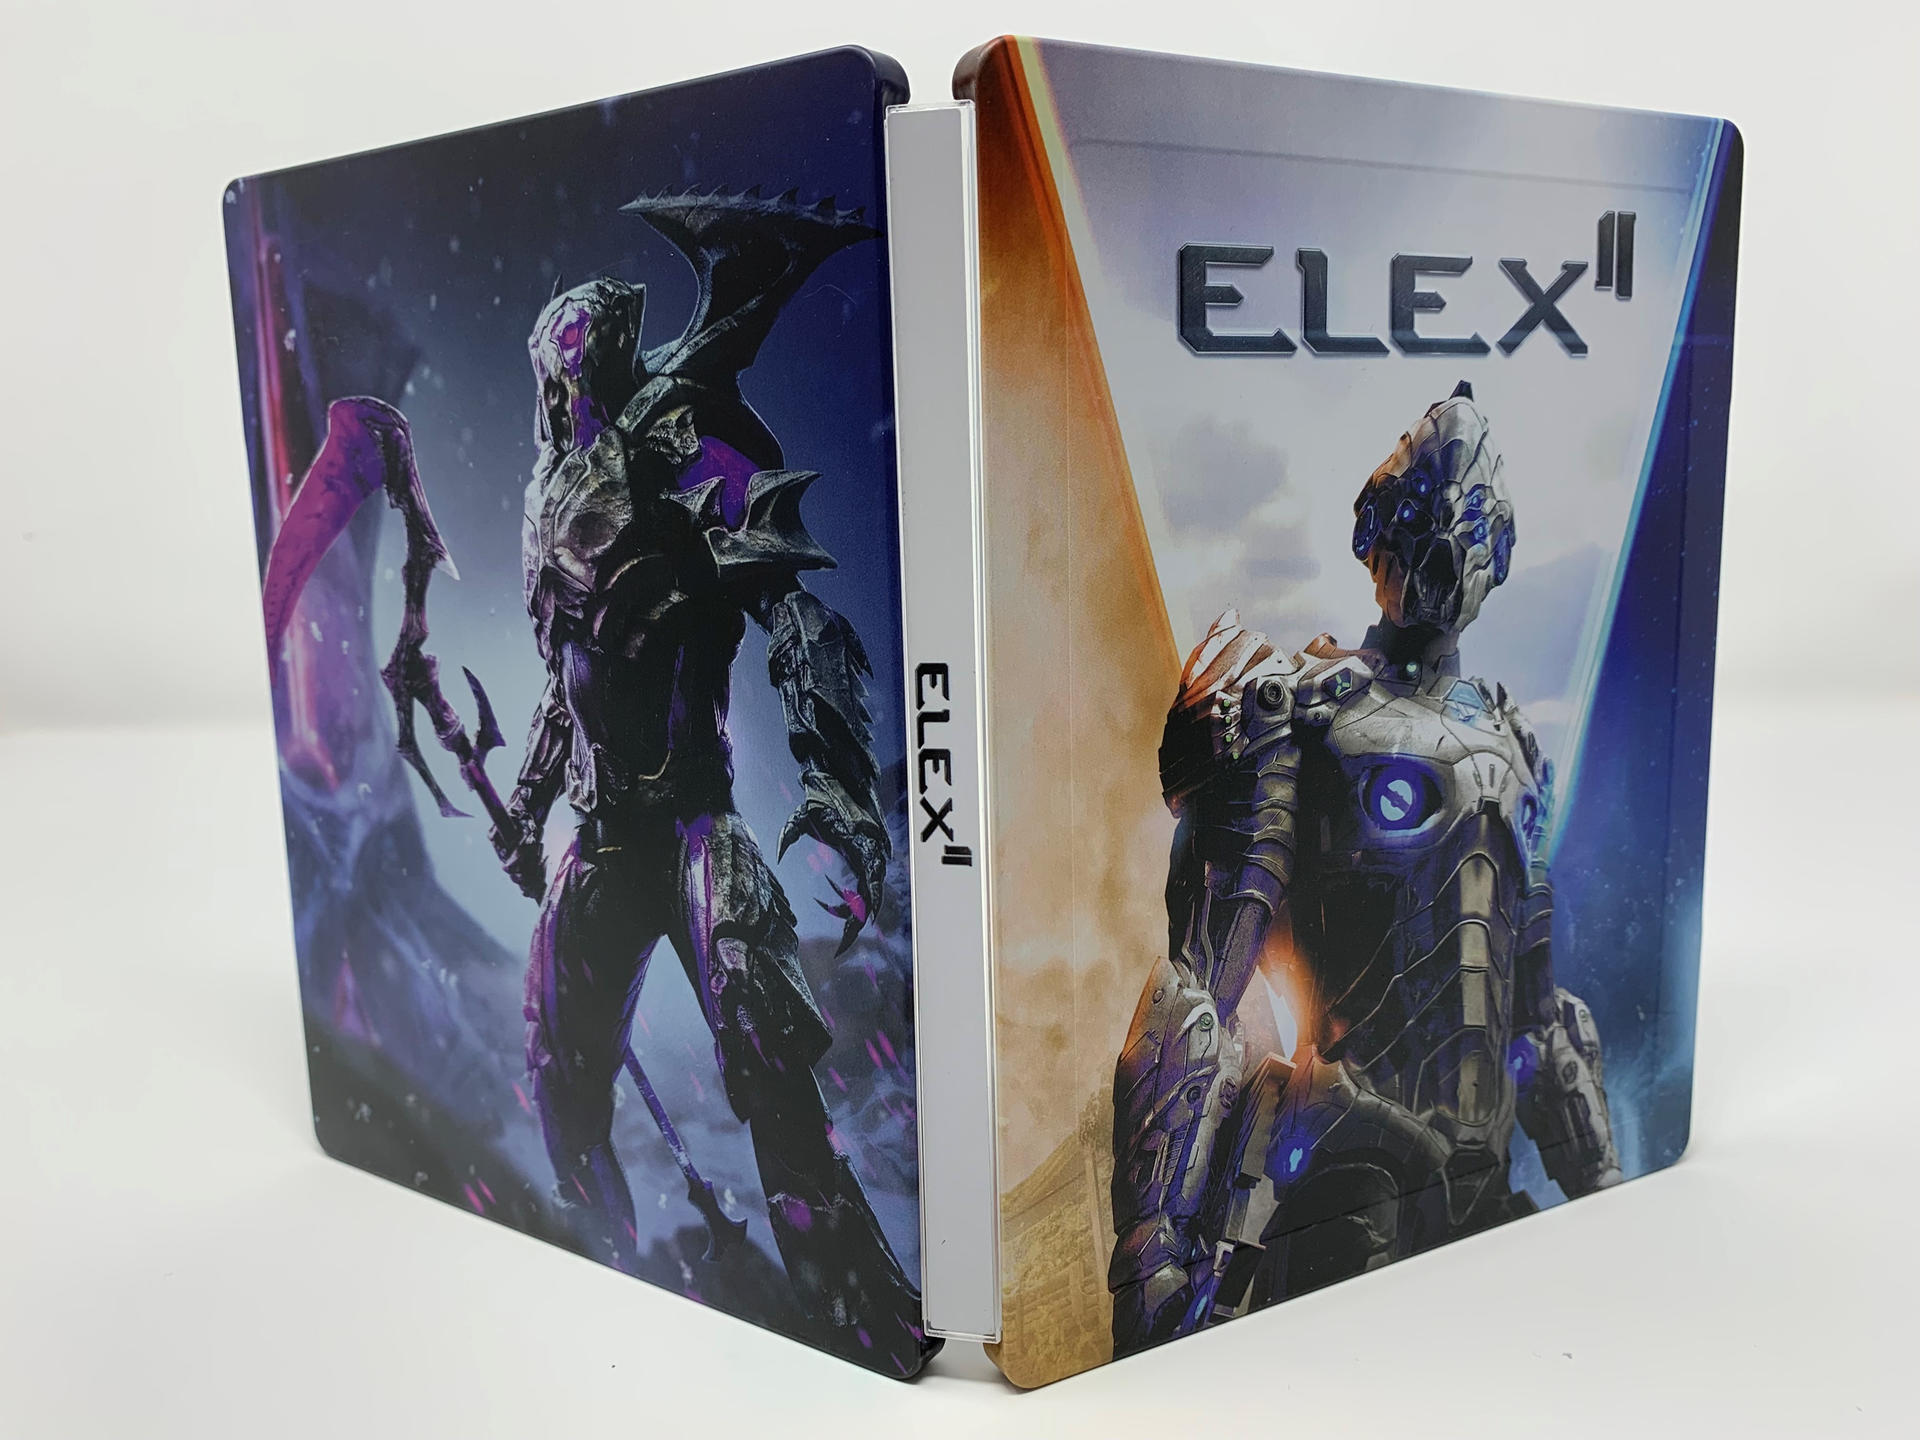 Day II - 5] - 1 ELEX [PlayStation Edition Steelbook